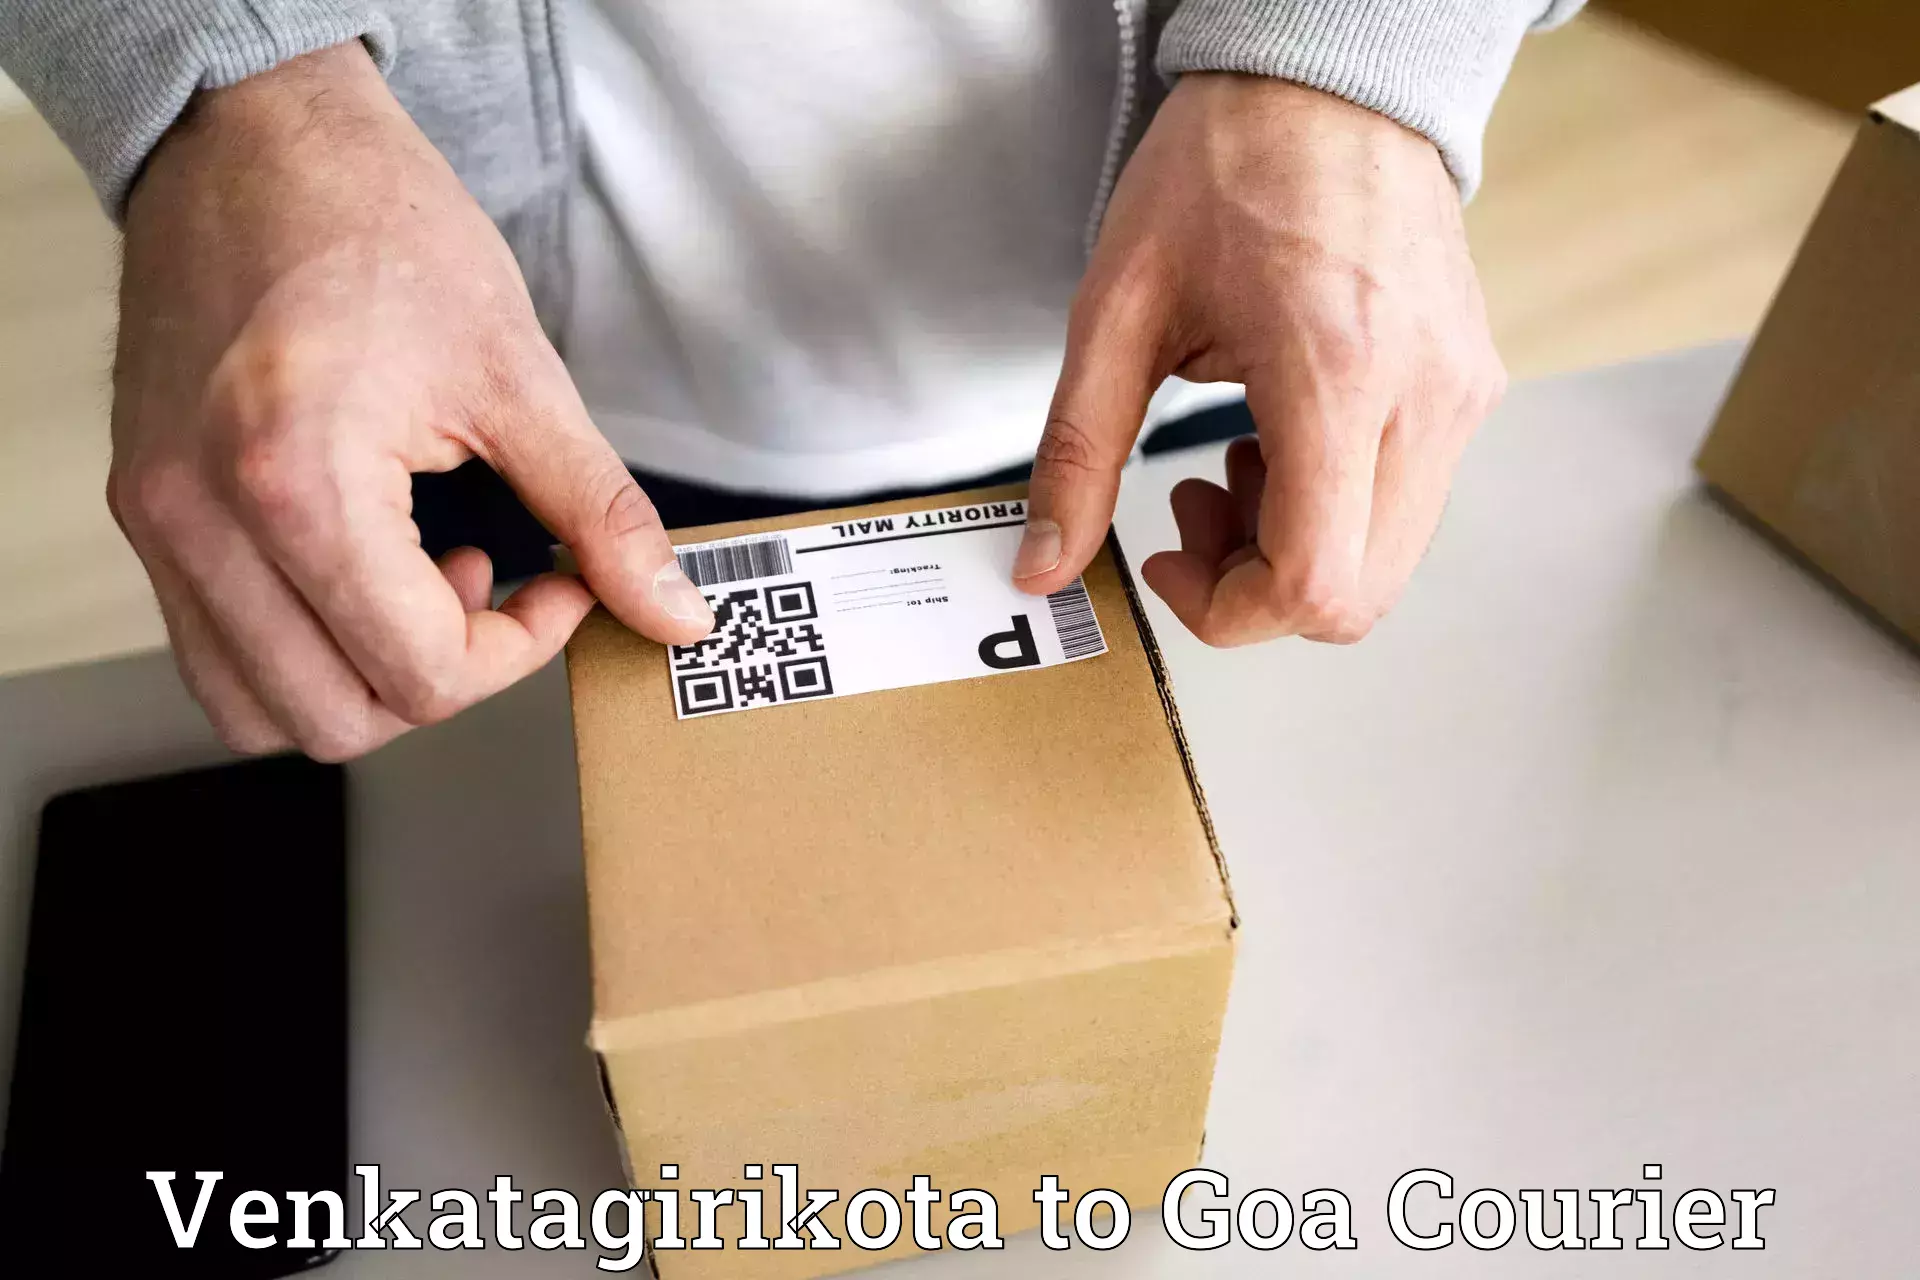 E-commerce fulfillment Venkatagirikota to South Goa